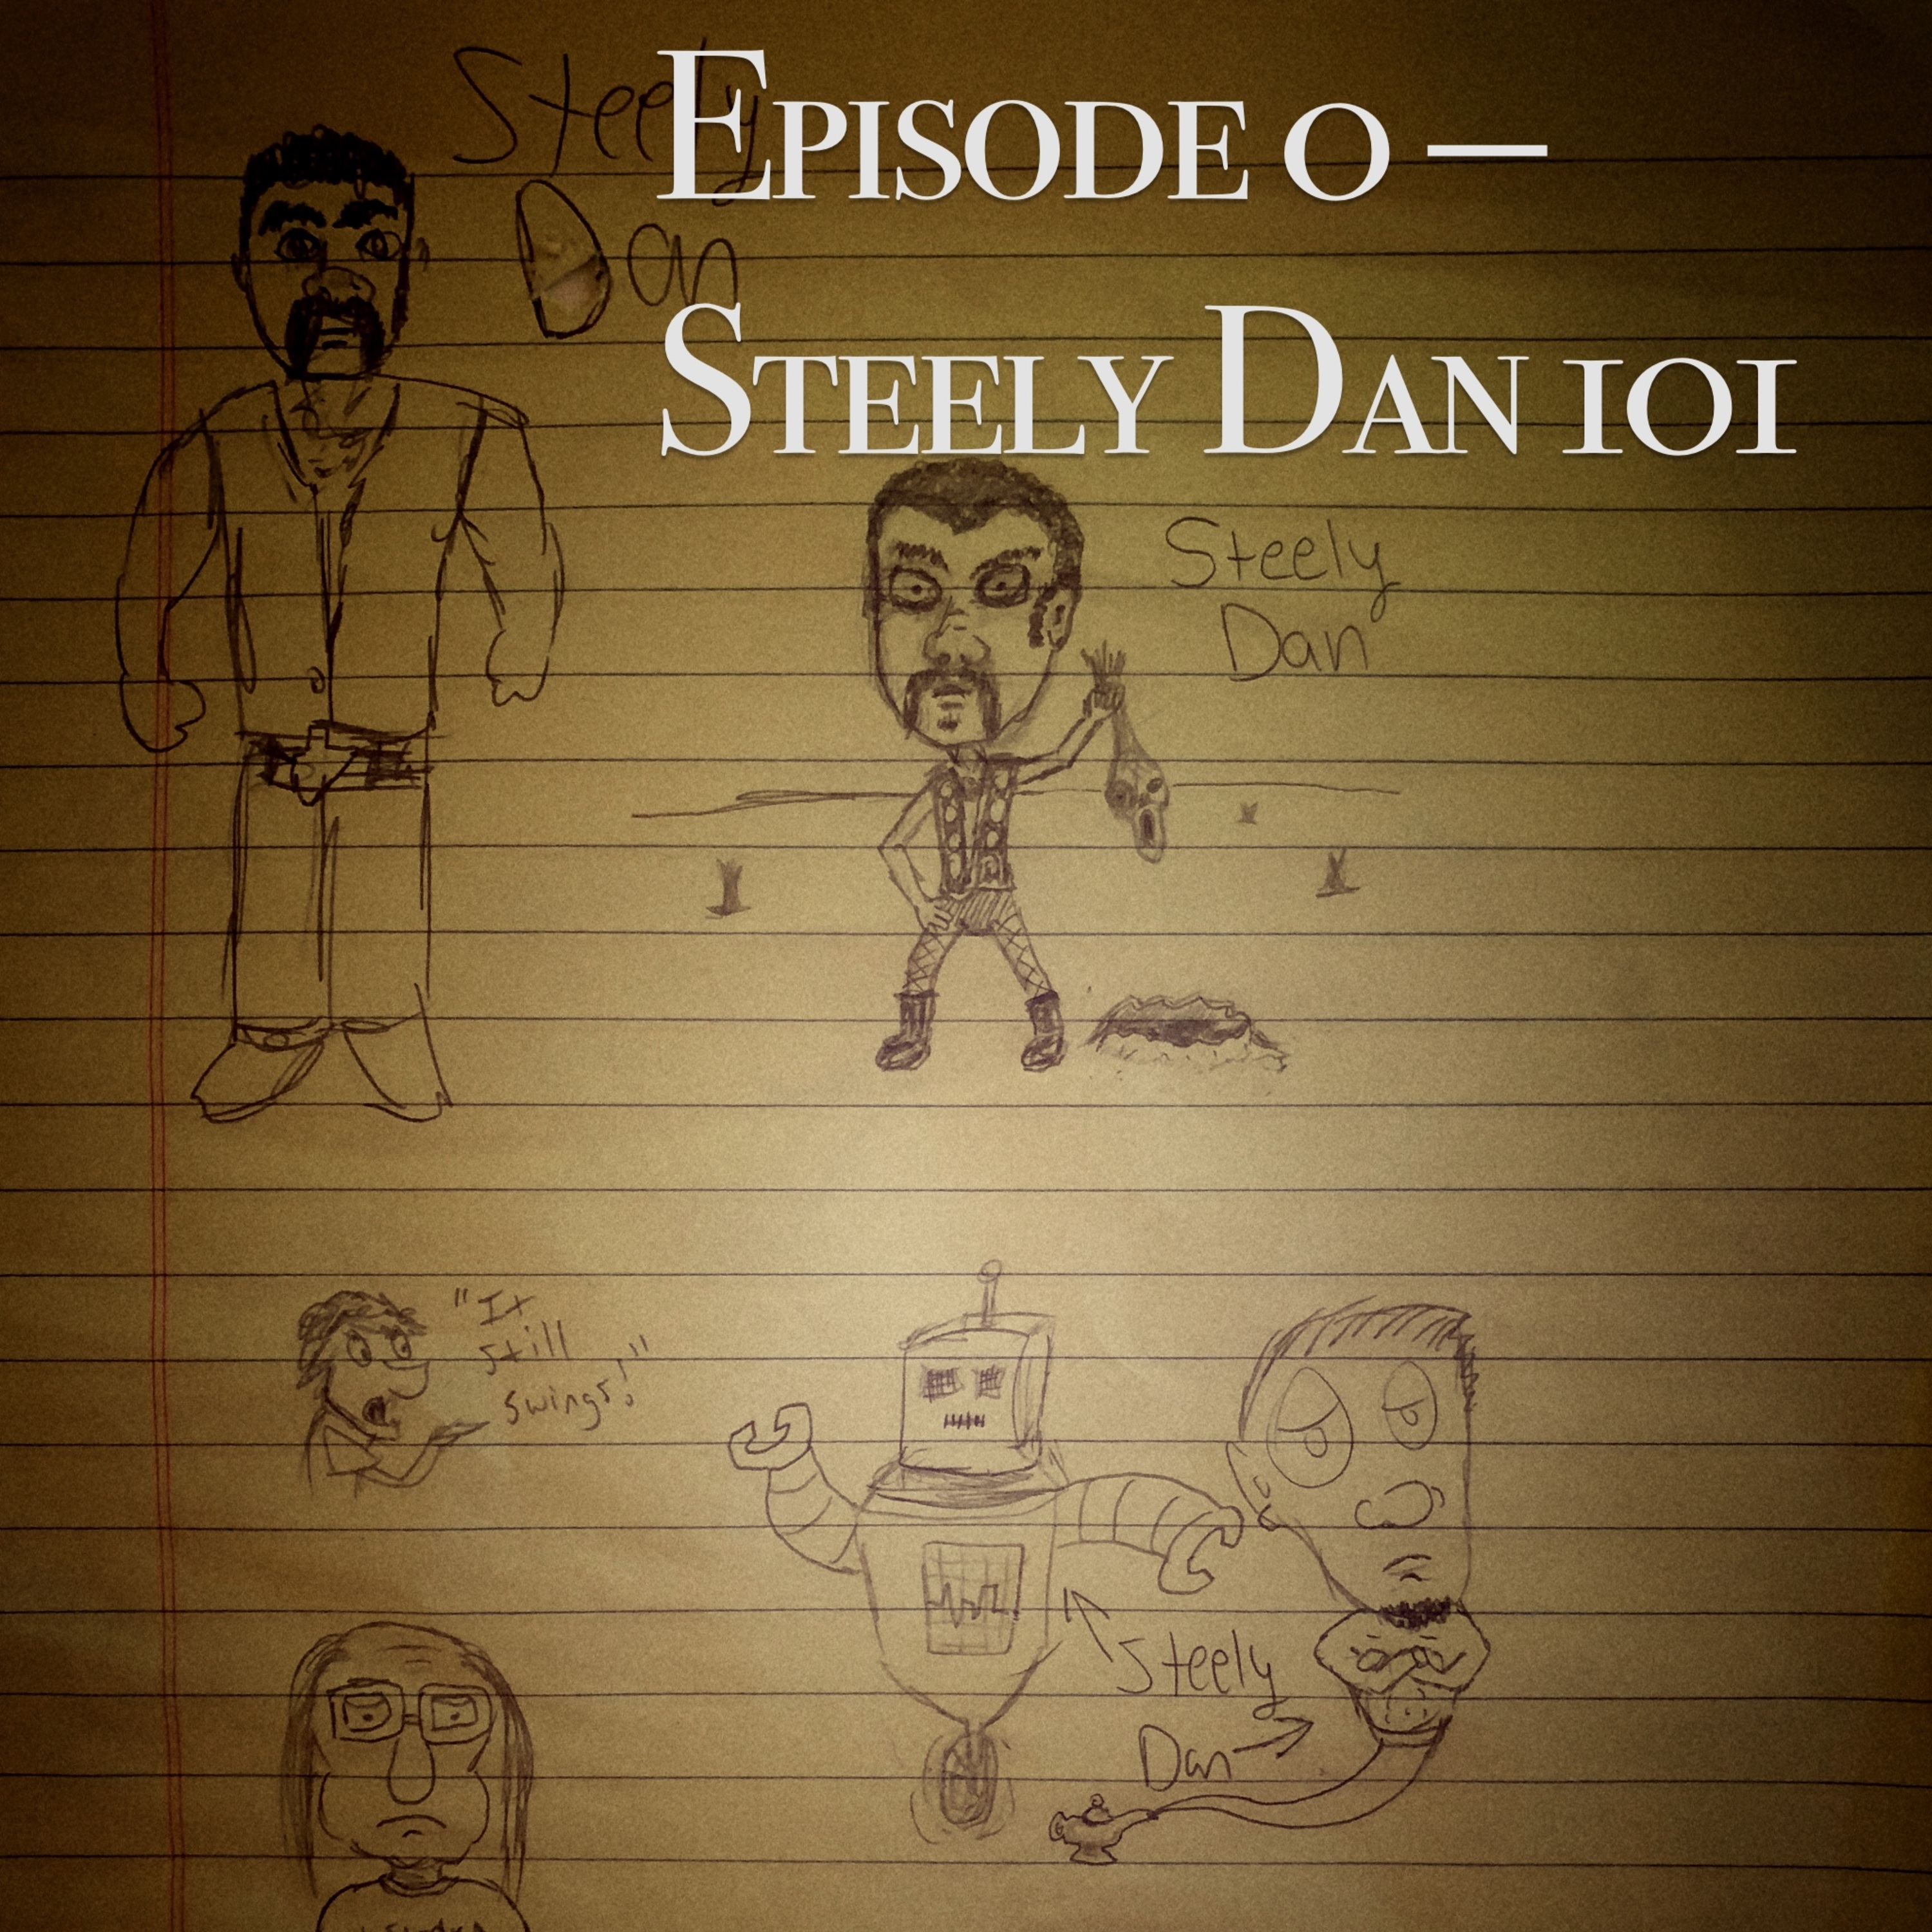 Episode 0: Steely Dan 101